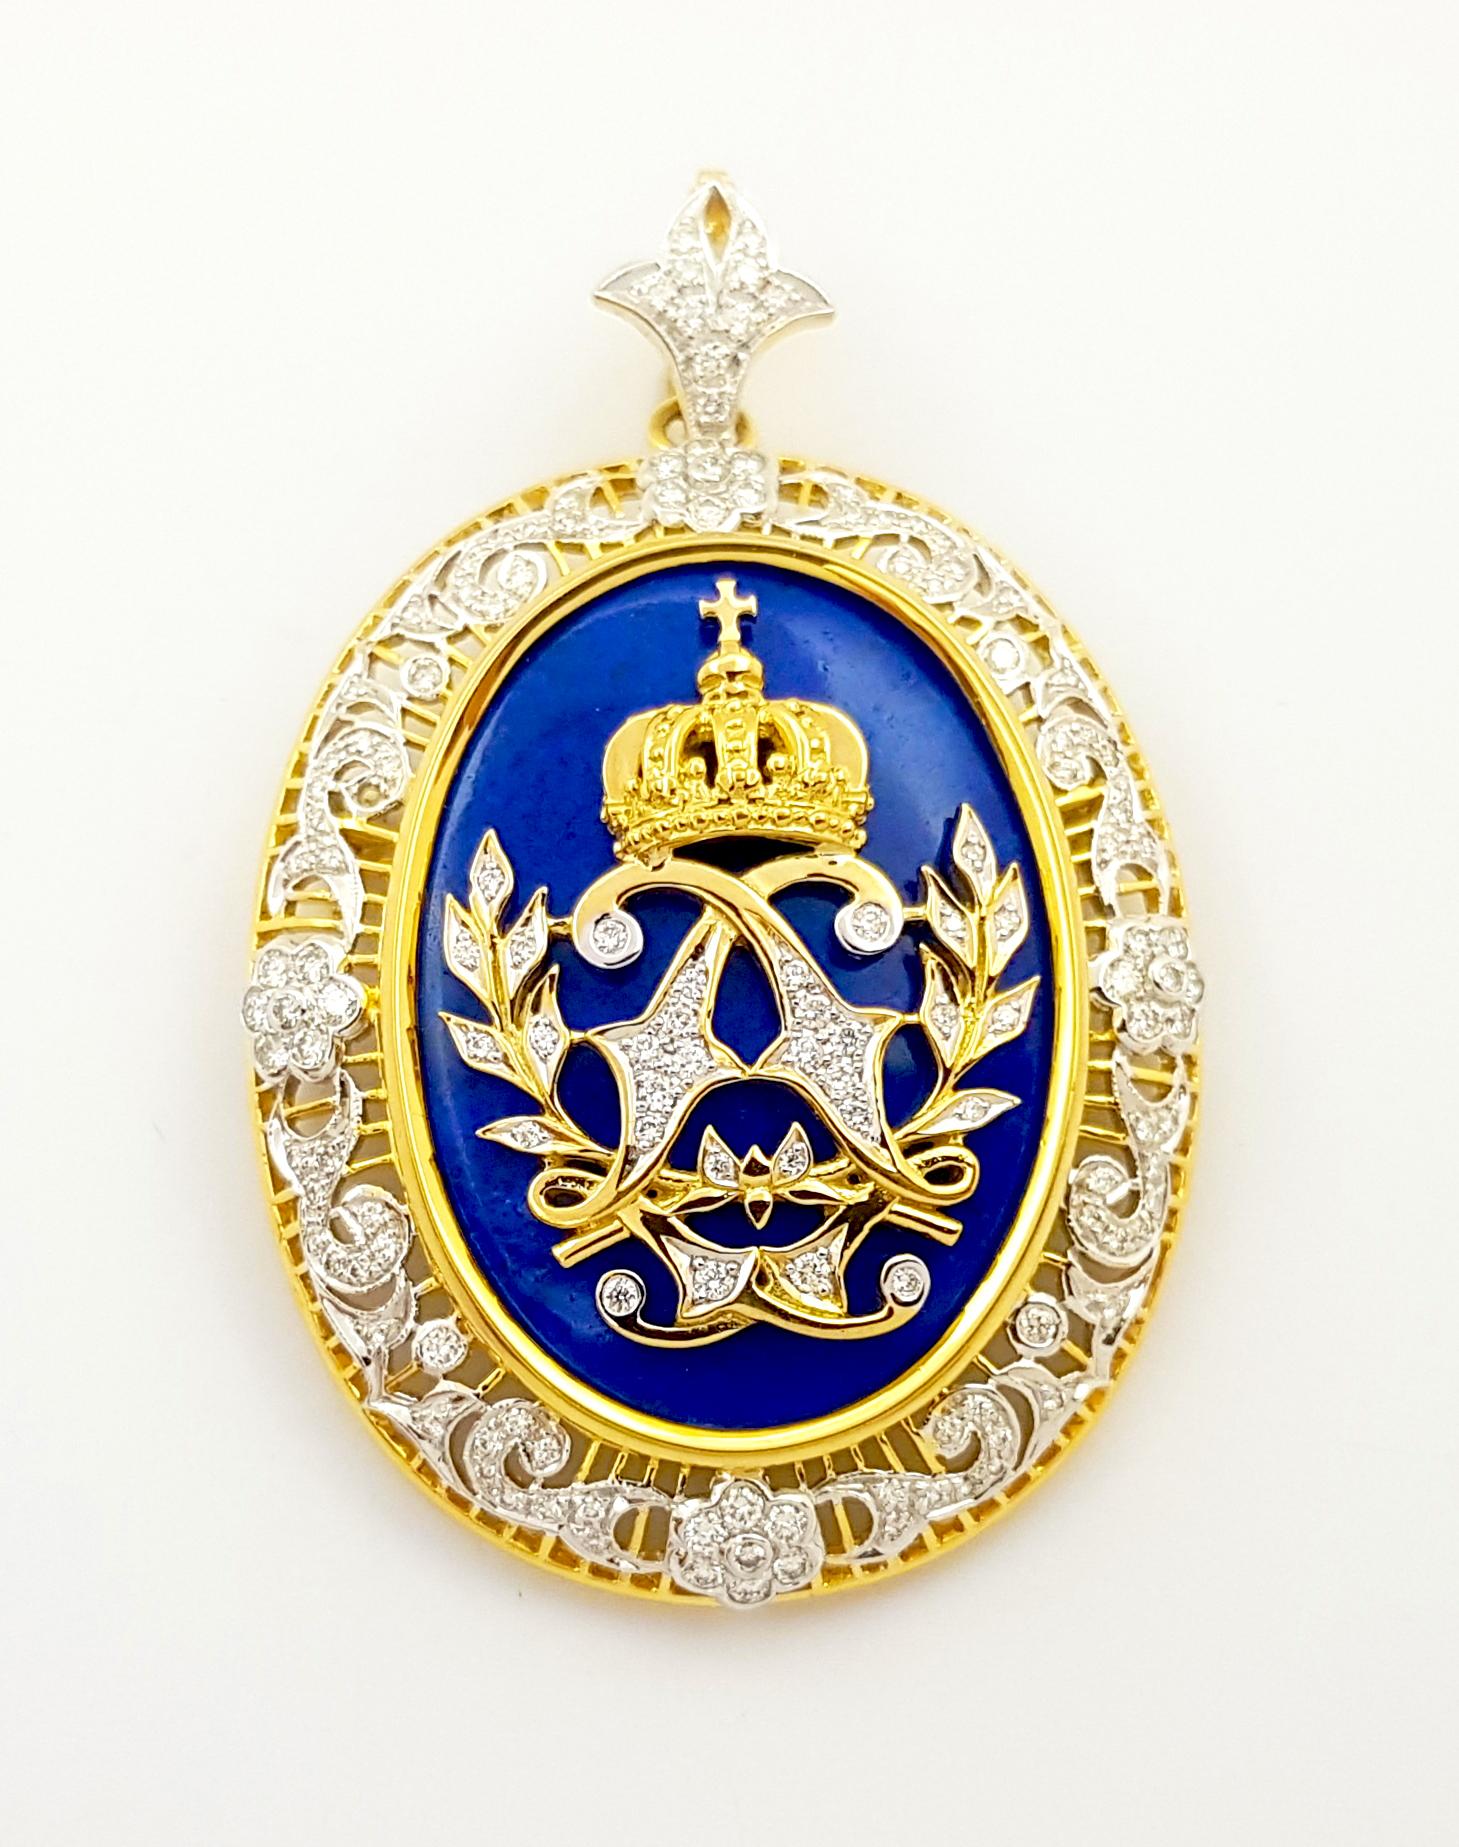 Lapiz Lazuli 26,79 Karat und Diamant 1,11 Karat Brosche/Anhänger in 18K Goldfassung

Breite: 4.8 cm 
Länge: 6,0 cm
Gesamtgewicht: 26,24 Gramm

